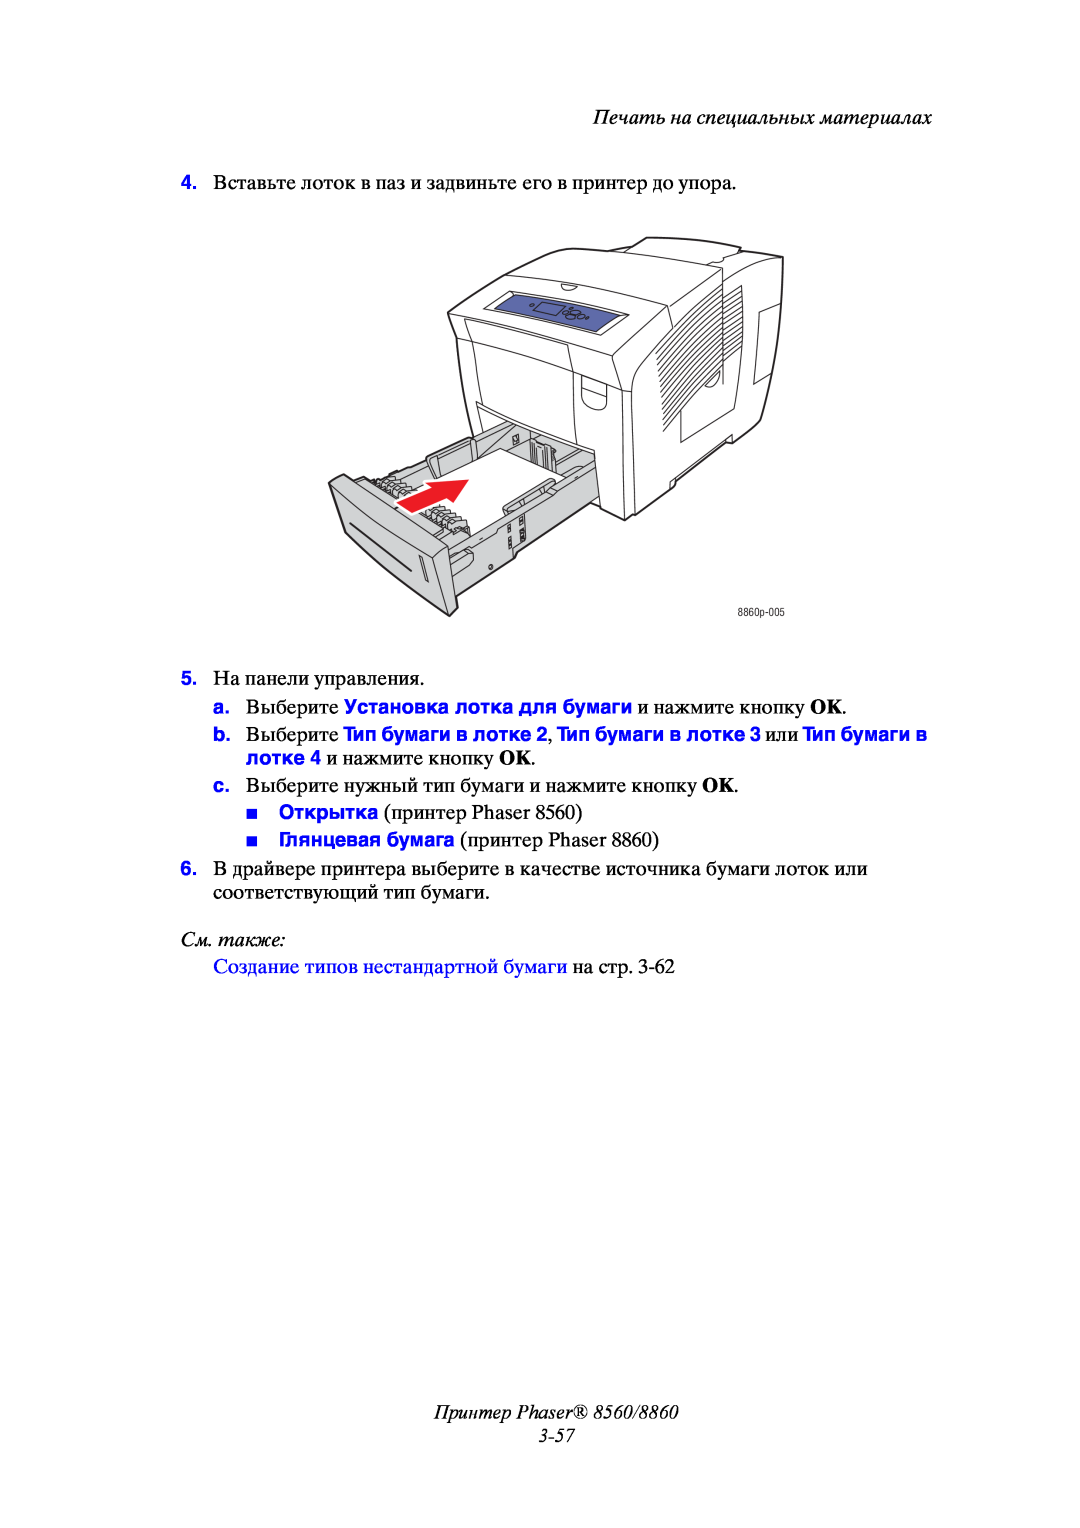 Xerox manual Принтер Phaser 8560/8860 3-57, Печать на специальных материалах, См. также 